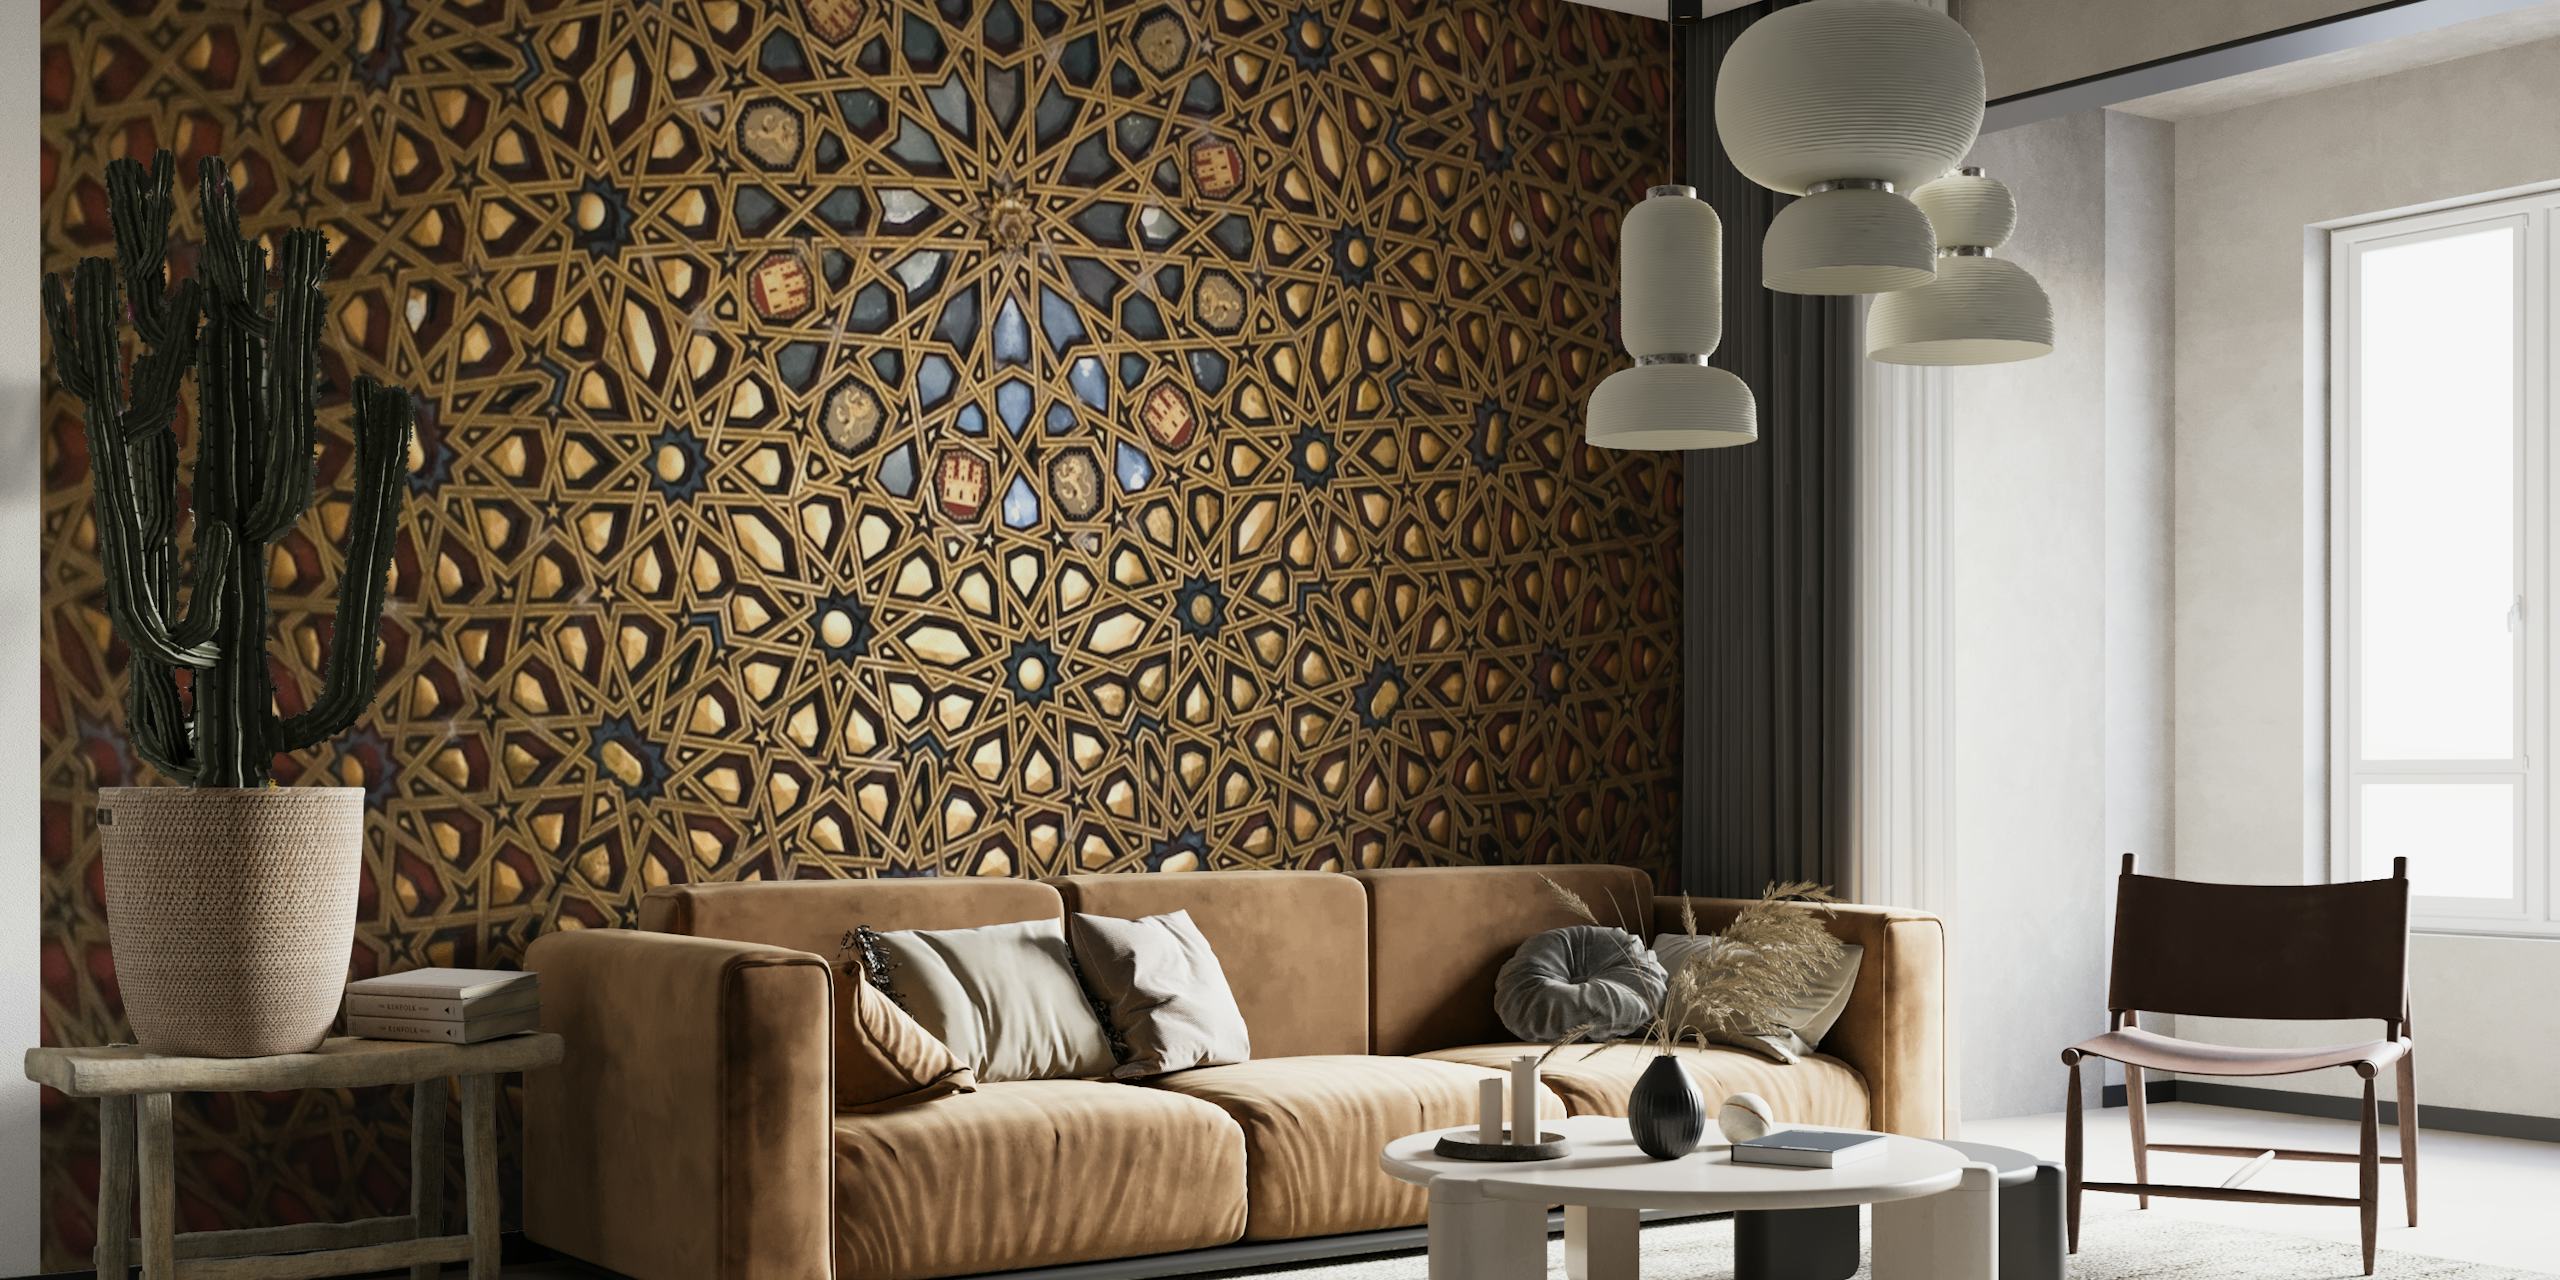 Mural de parede de teto dourado com padrão geométrico inspirado no Palácio Alcazar